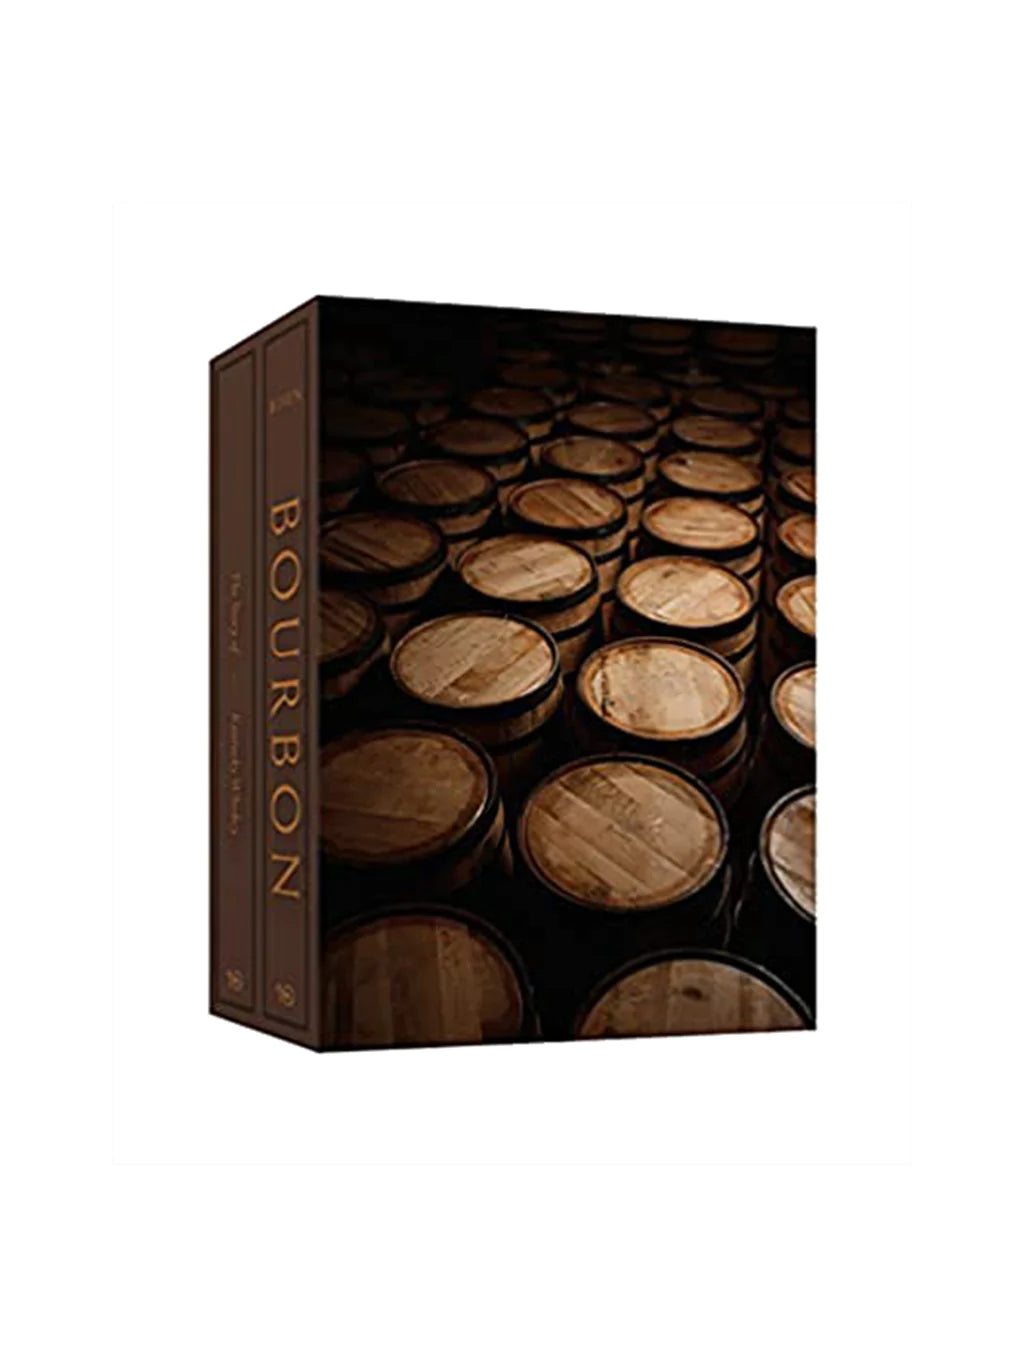 Kentucky Bourbon Coffee Table Book